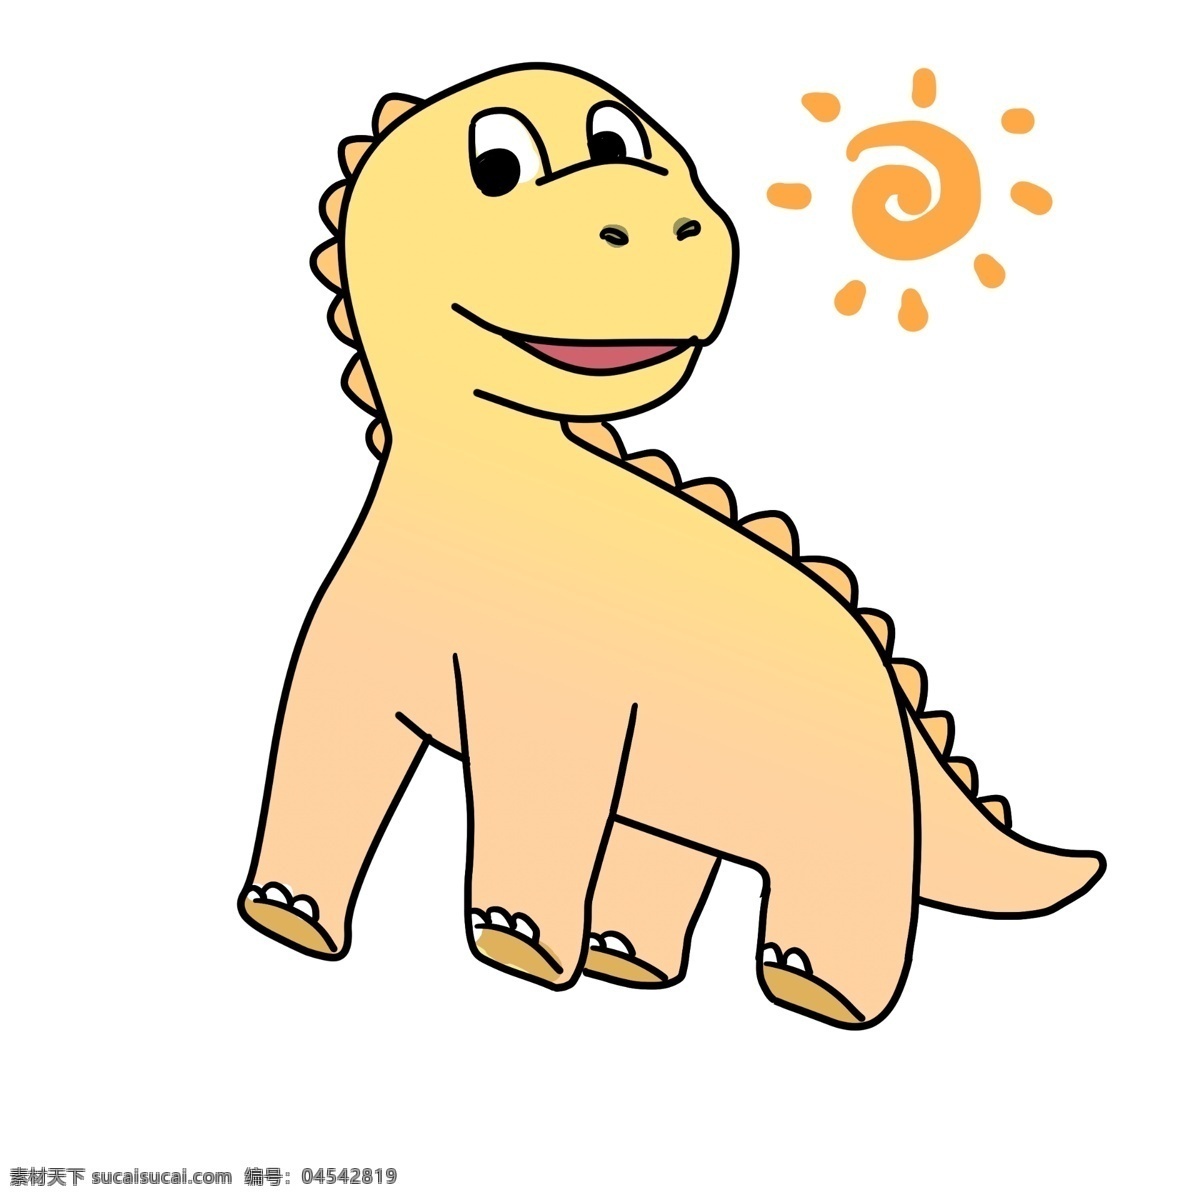 开心 小 恐龙 插画 开心的恐龙 卡通插画 恐龙插画 动物插画 白垩纪恐龙 恐龙玩具 圆圆的太阳